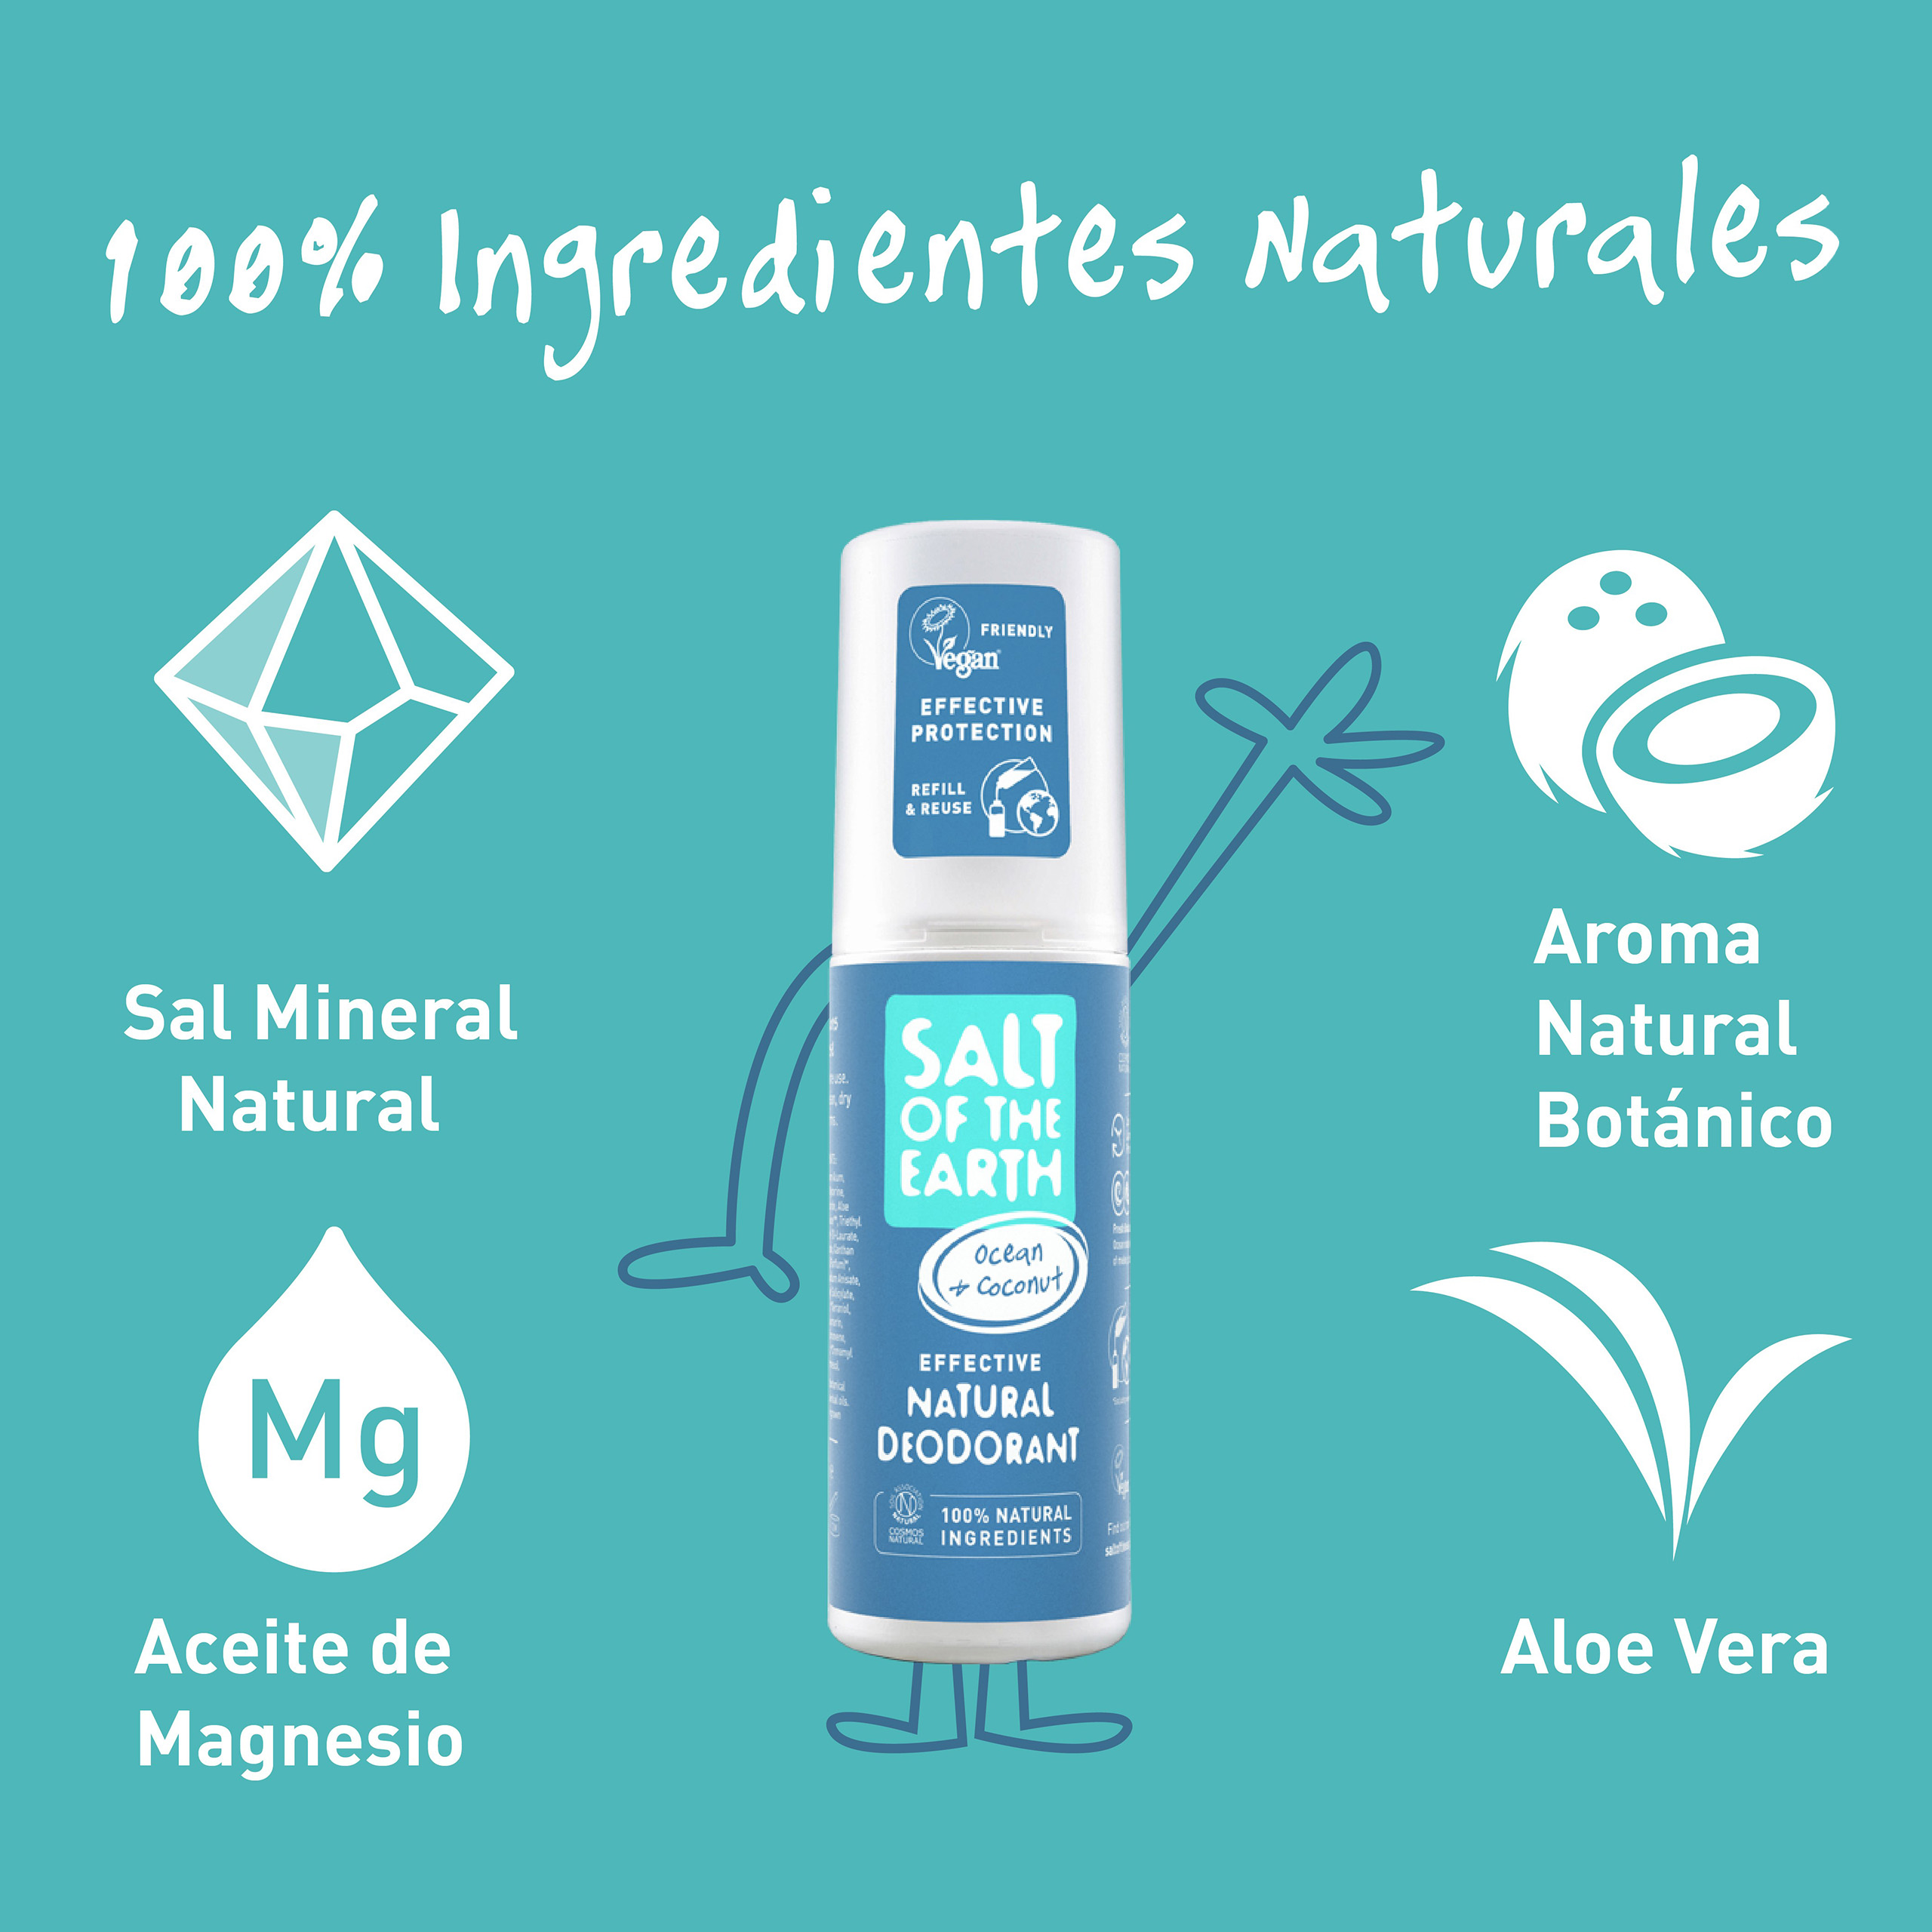 Ingredientes naturales